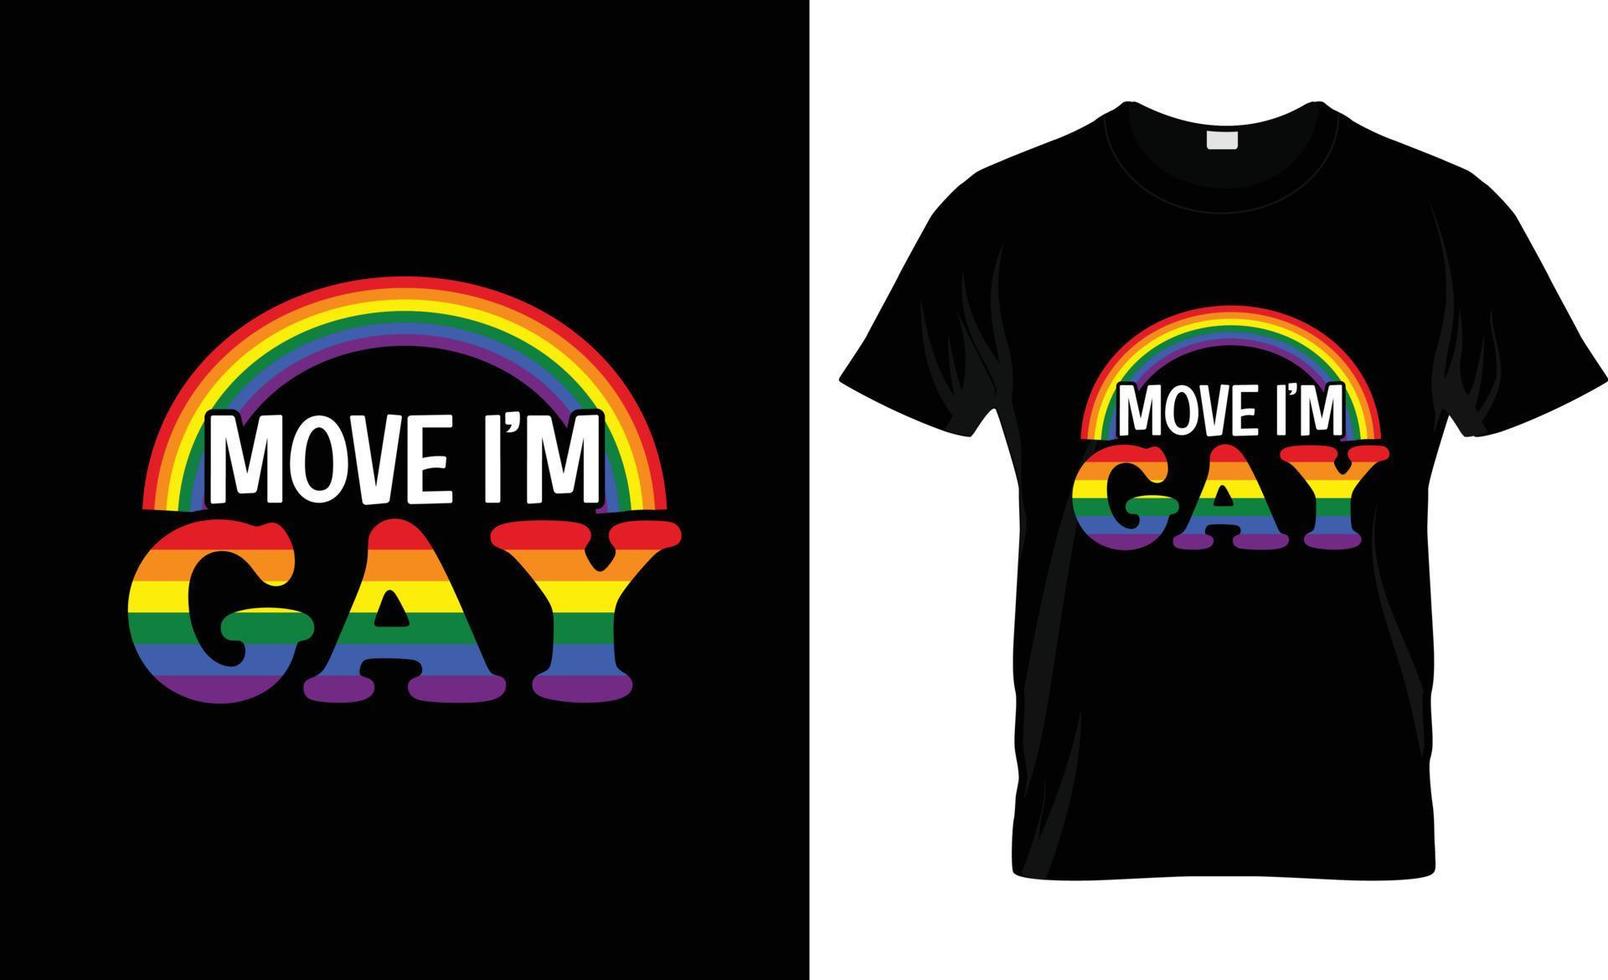 déplacer je suis gay design de t-shirt payé par gay, slogan de t-shirt payé par gay et conception de vêtements, typographie payée par gay, vecteur payé par gay, illustration payée par gay